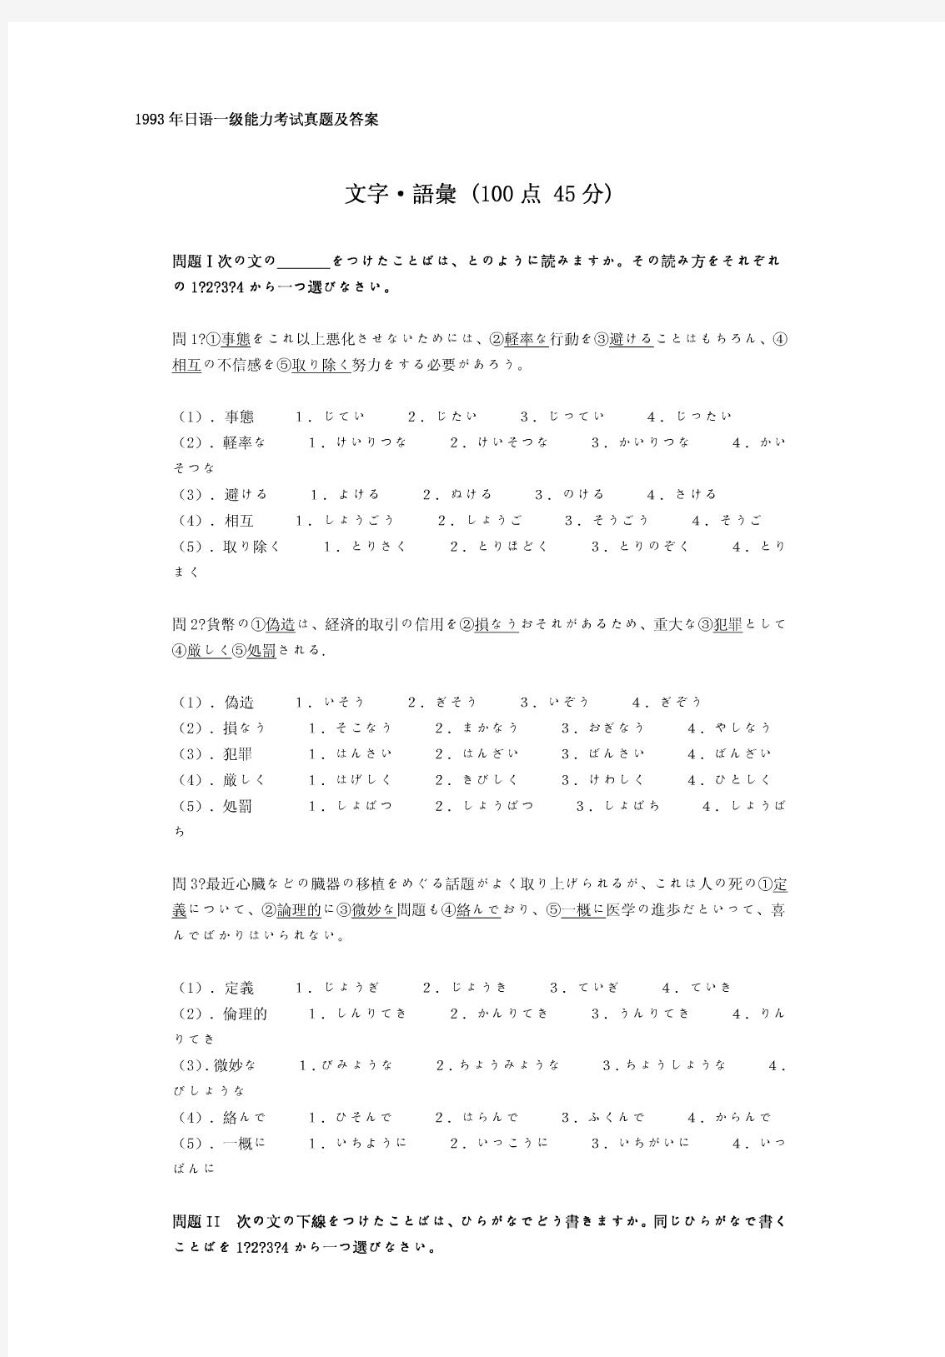 日语能力考试1级真题及备考资料-1993年日语能力考试一级真题清晰